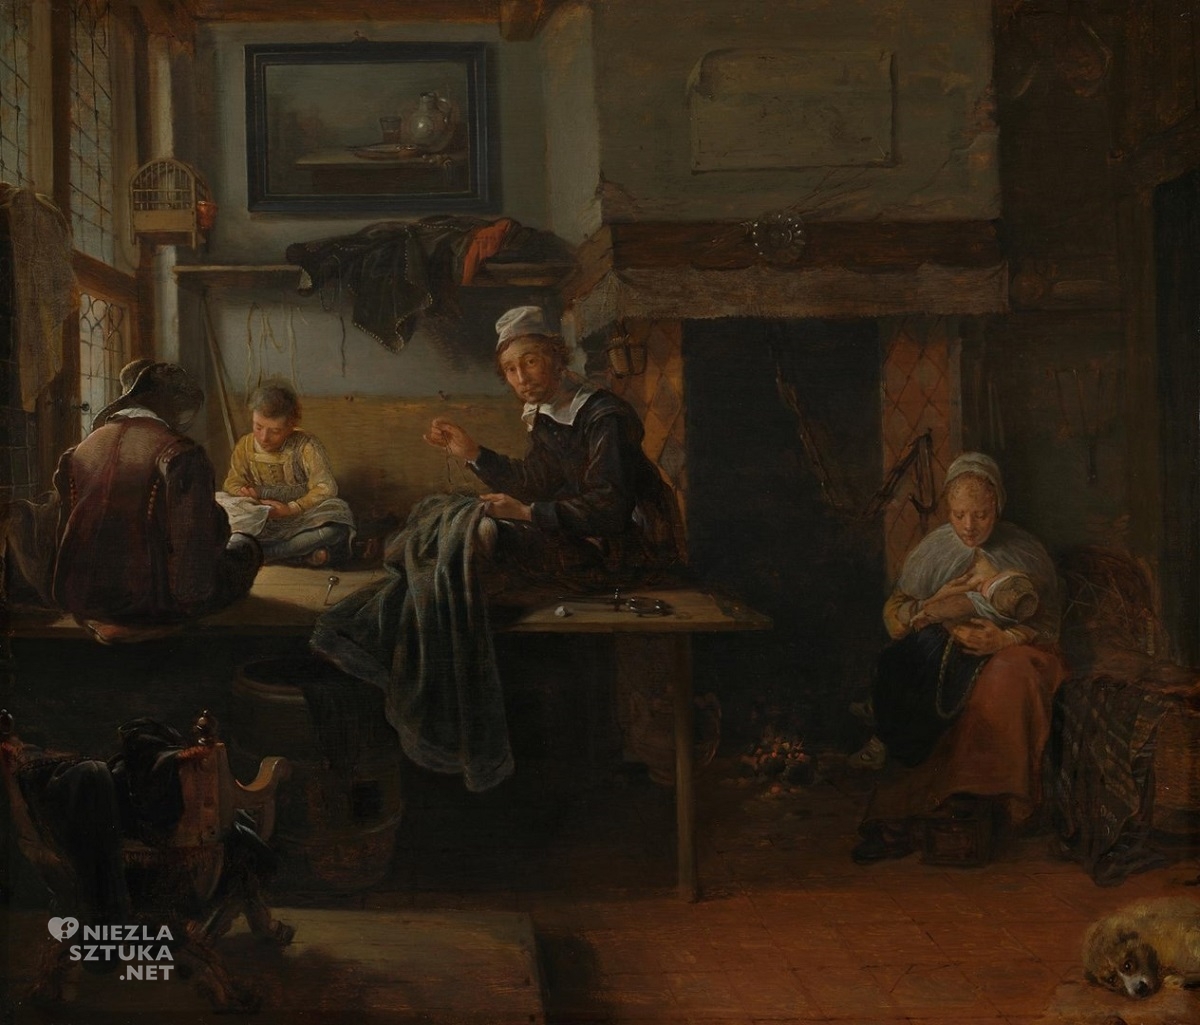 Quiringh van Brekelenkam, Wnętrze krawieckiego warsztatu, malarz holenderski, sztuka niderlandzka, Niezła Sztuka